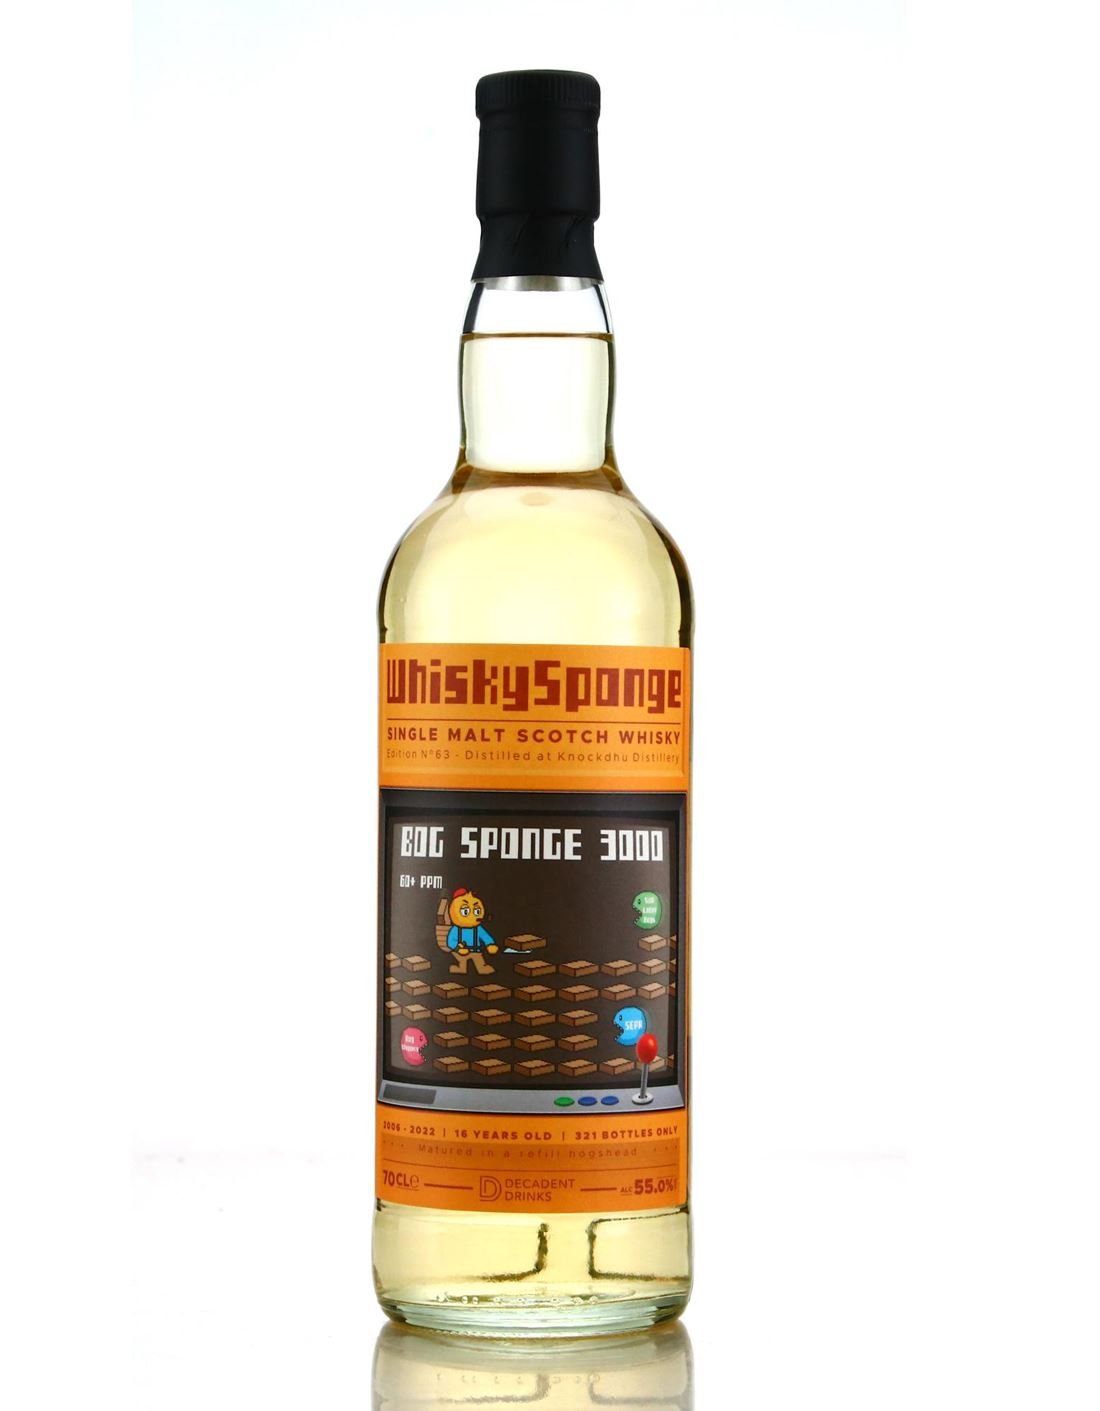 Knockdhu 2006 Whisky Sponge Edition No.63 — DRAMFACE